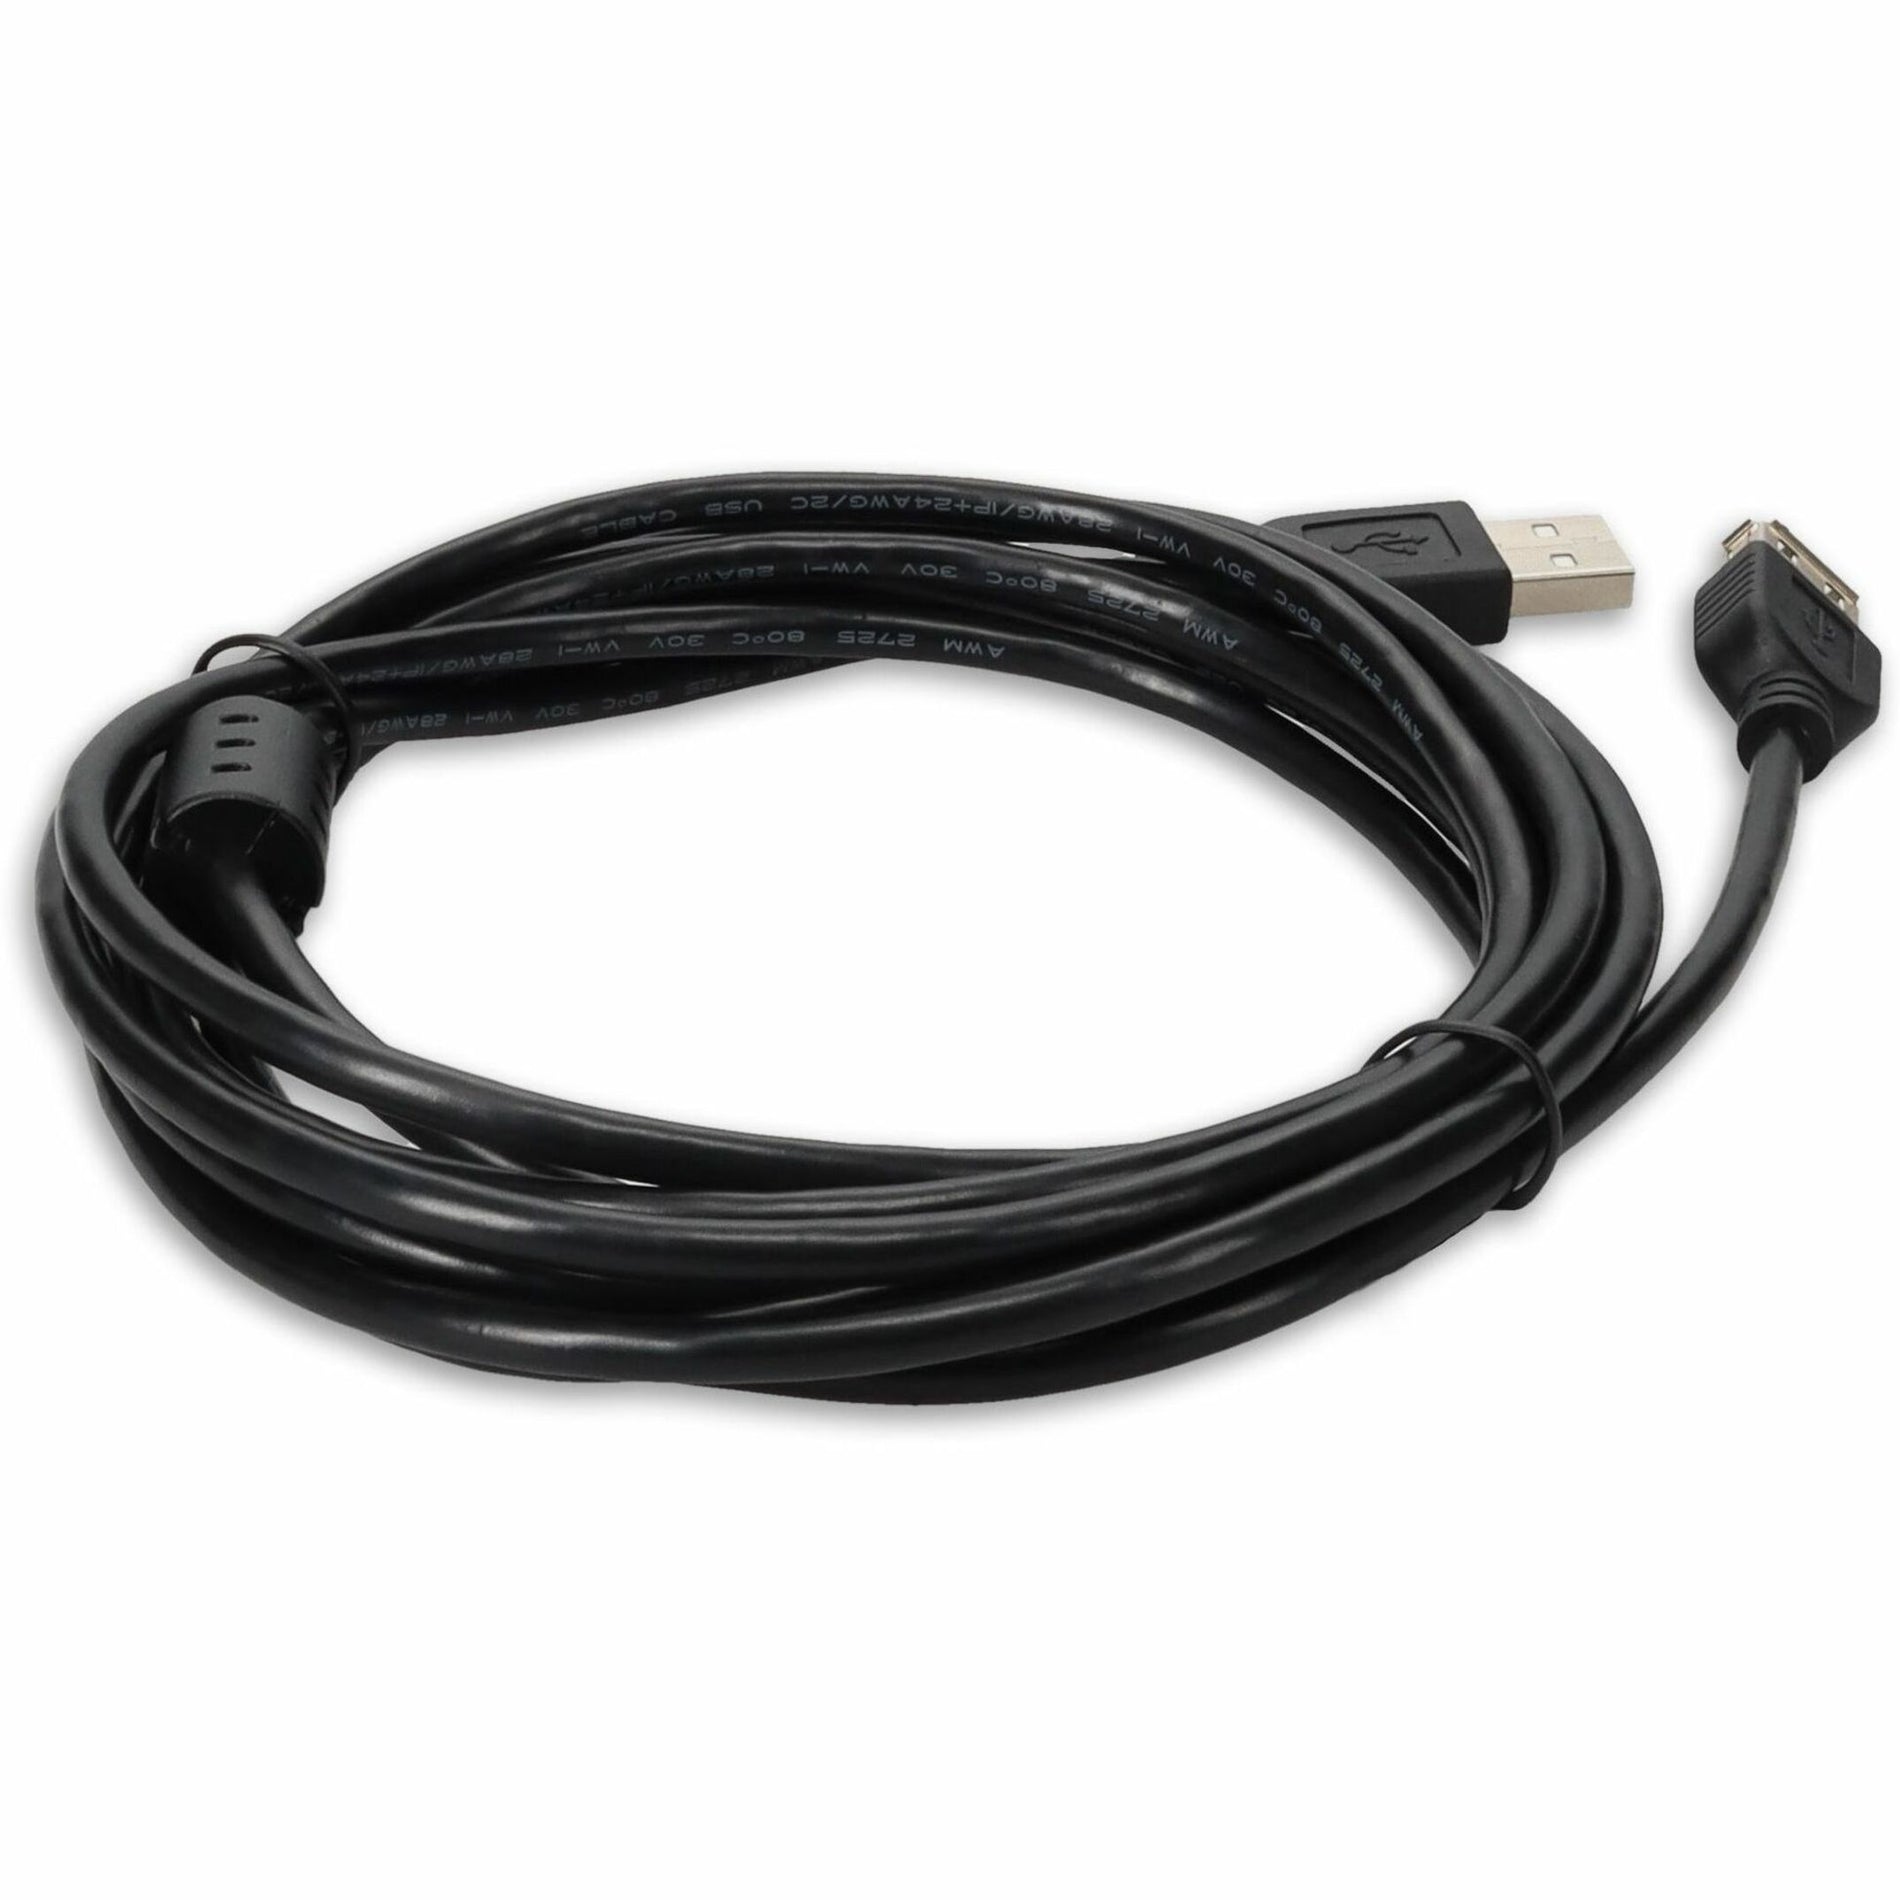 ブランド名: AddOn   USBEXTAA10FB 10ft (3M) USB 2.0 A to A Extension Cable - Male to Female Black  USBEXTAA10FB 10ft (3M) USB 2.0 A to A エクステンションケーブル - メス-オス ブラック